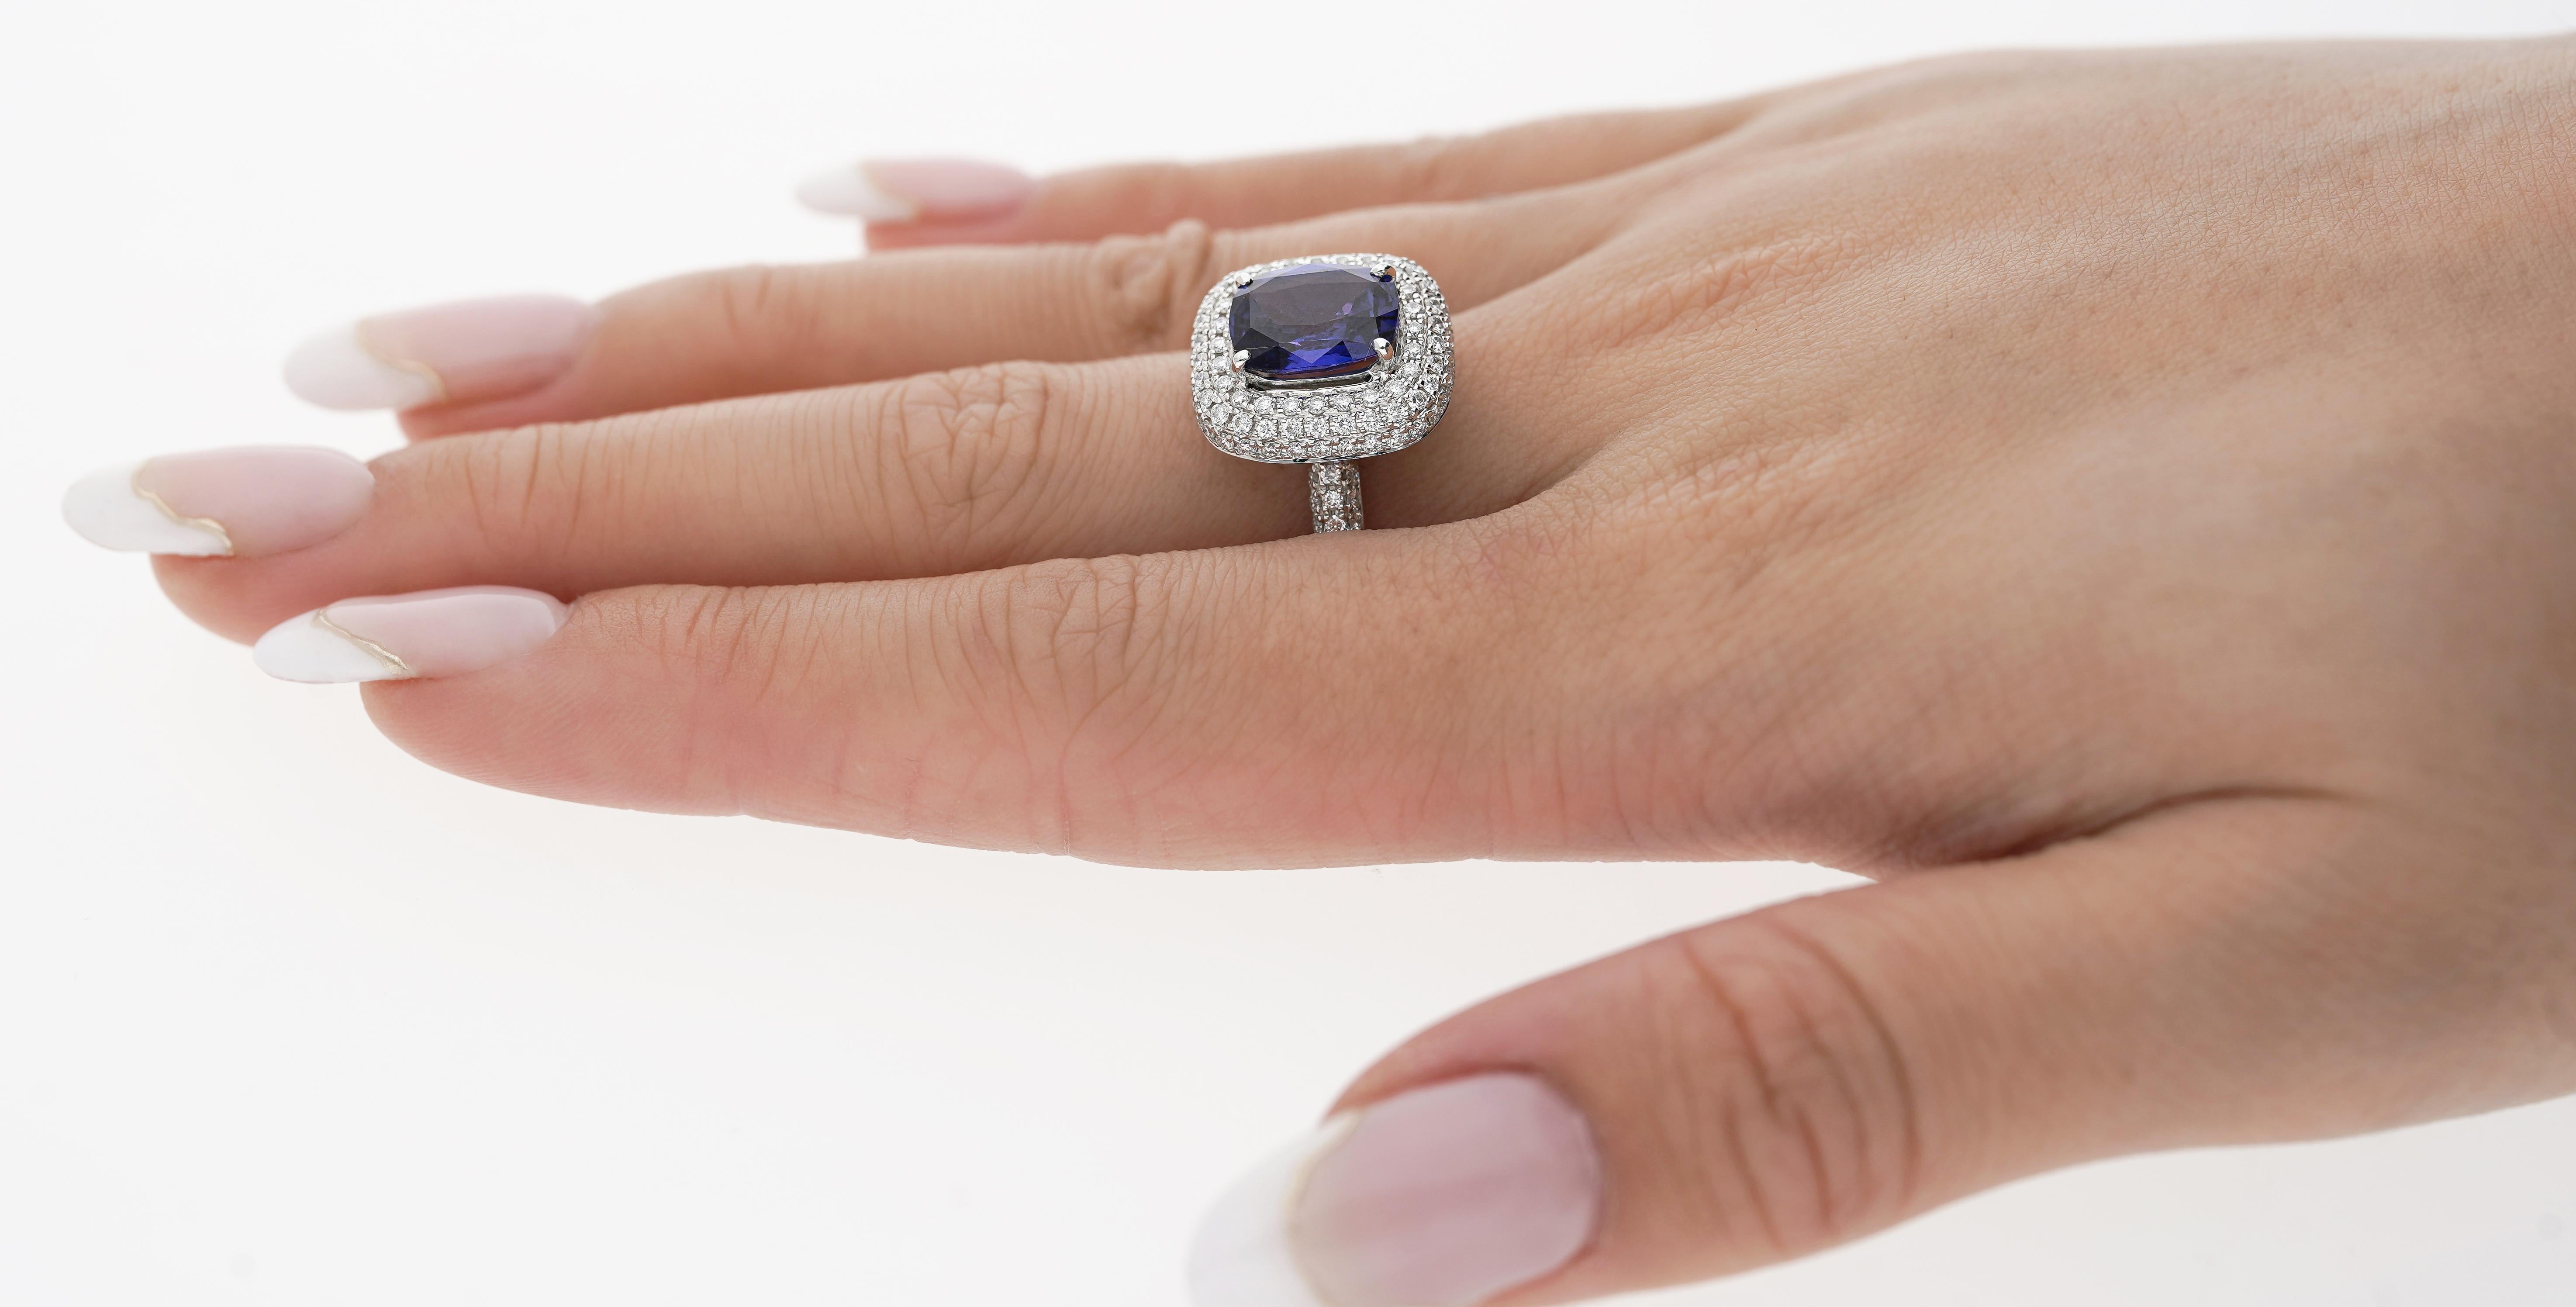 GIA Certified No Heat Color Change Blauer Saphir und Diamant-Ring. 

Der Mittelstein Saphir weist einen wechselnden Farbton von Violett bis Blau auf. Kissenschliff, GIA-zertifiziert, nicht erhitzt (unbehandelt) und 3,25 Karat. Gepaart mit 130 weißen